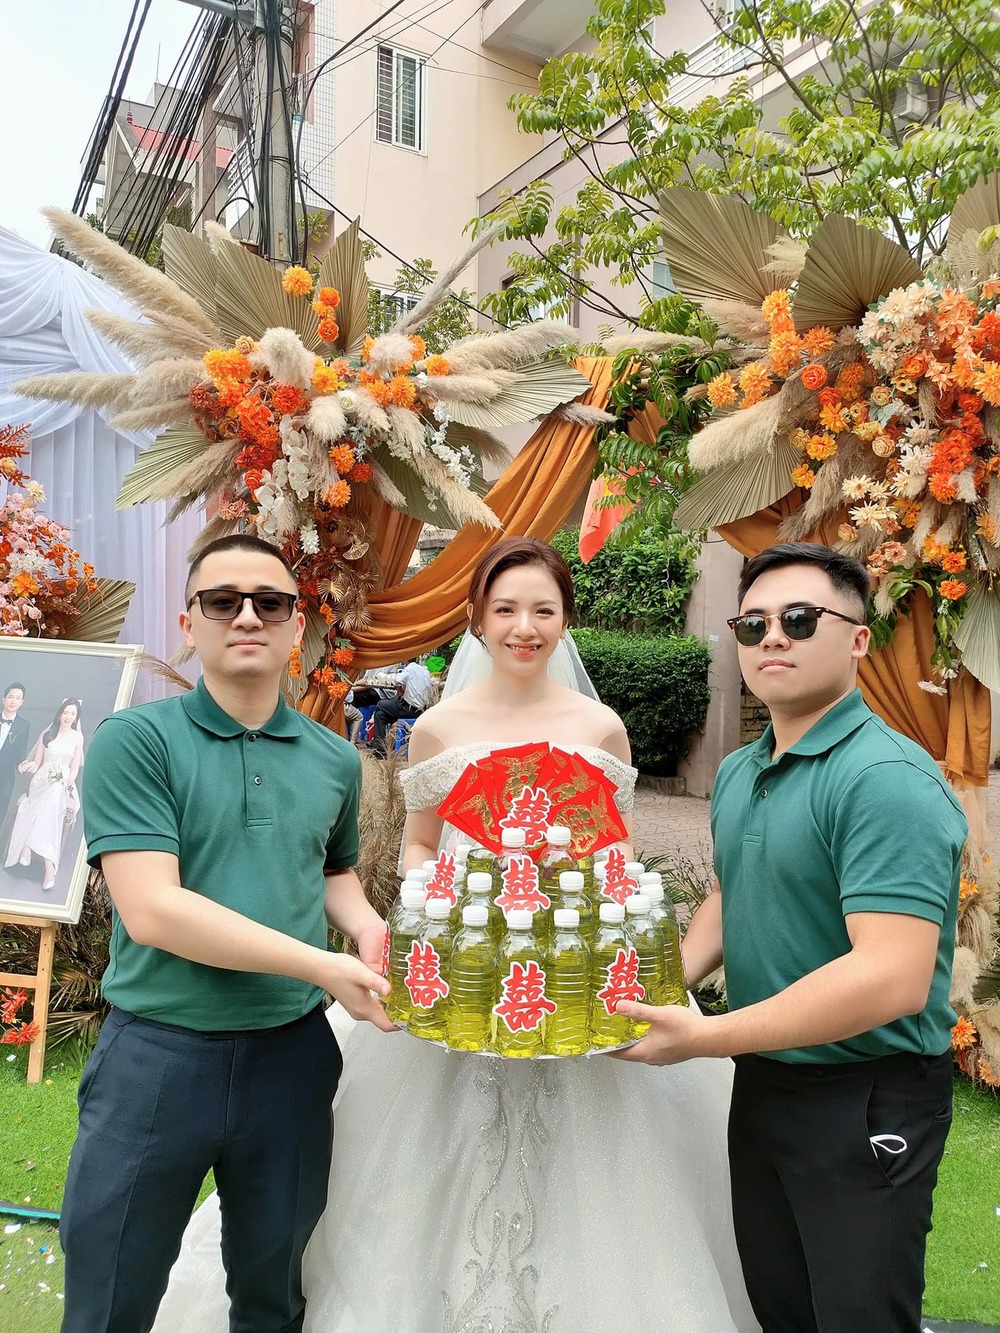 Cô dâu Bắc Giang được hội bạn thân tặng 10 lít xăng trong ngày cưới, cách xử lý rất thông minh - Ảnh 2